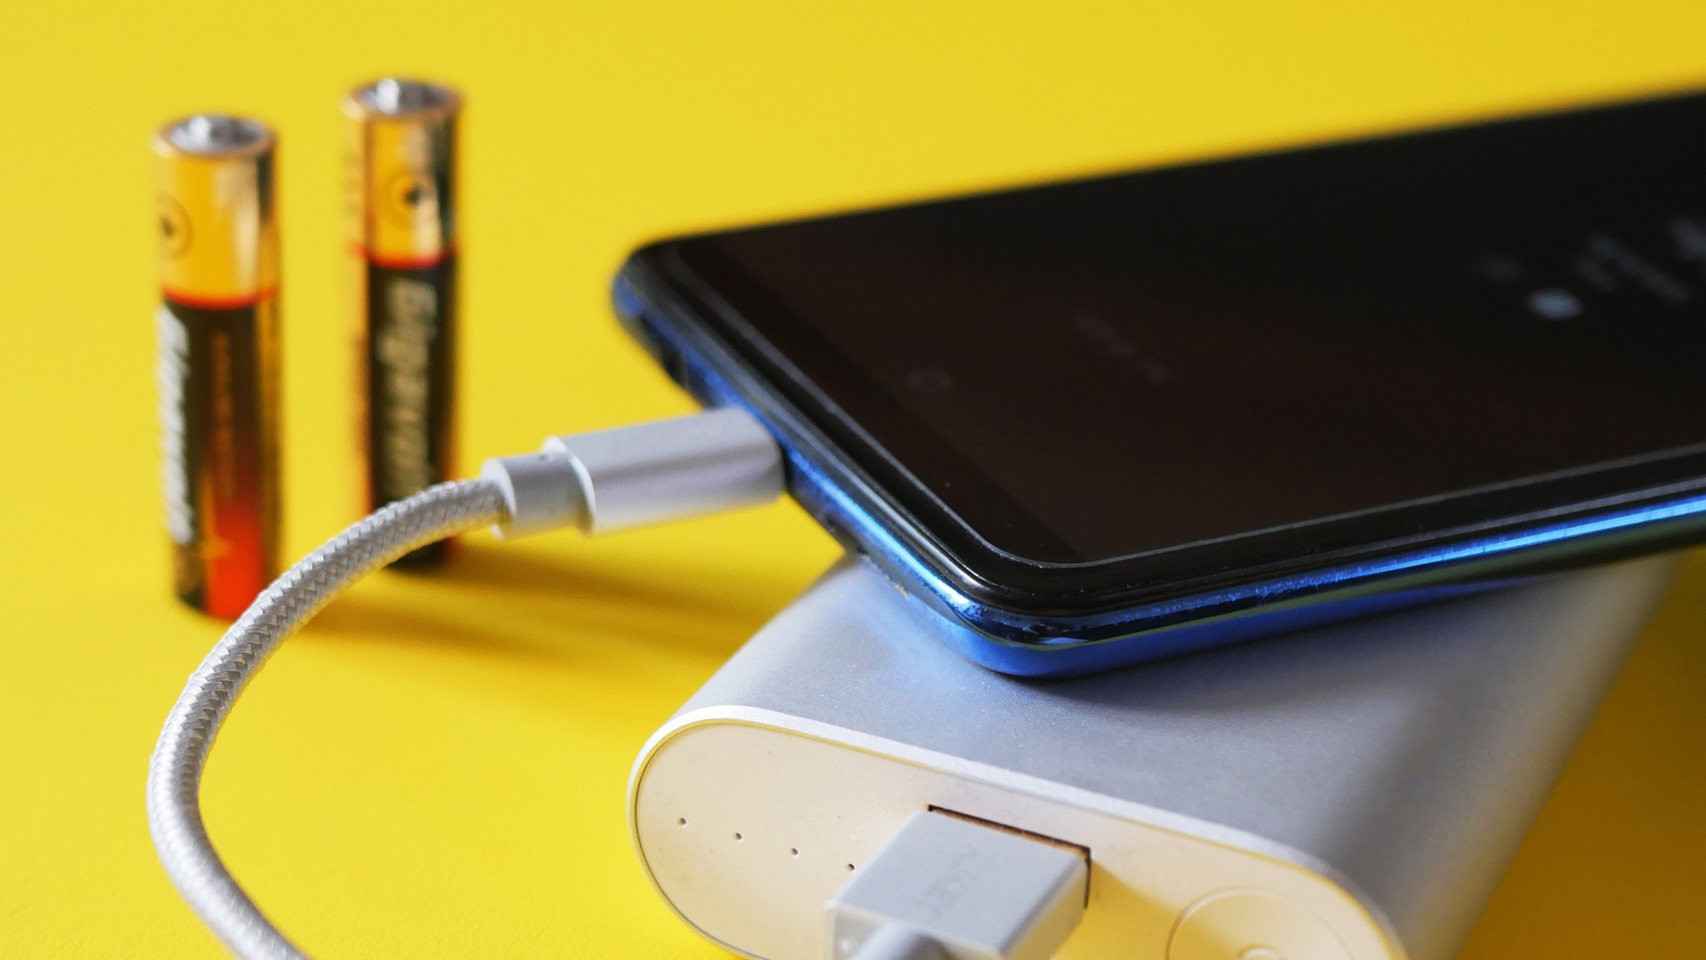 La batería del móvil es el componente que más rápido se degrada con el uso